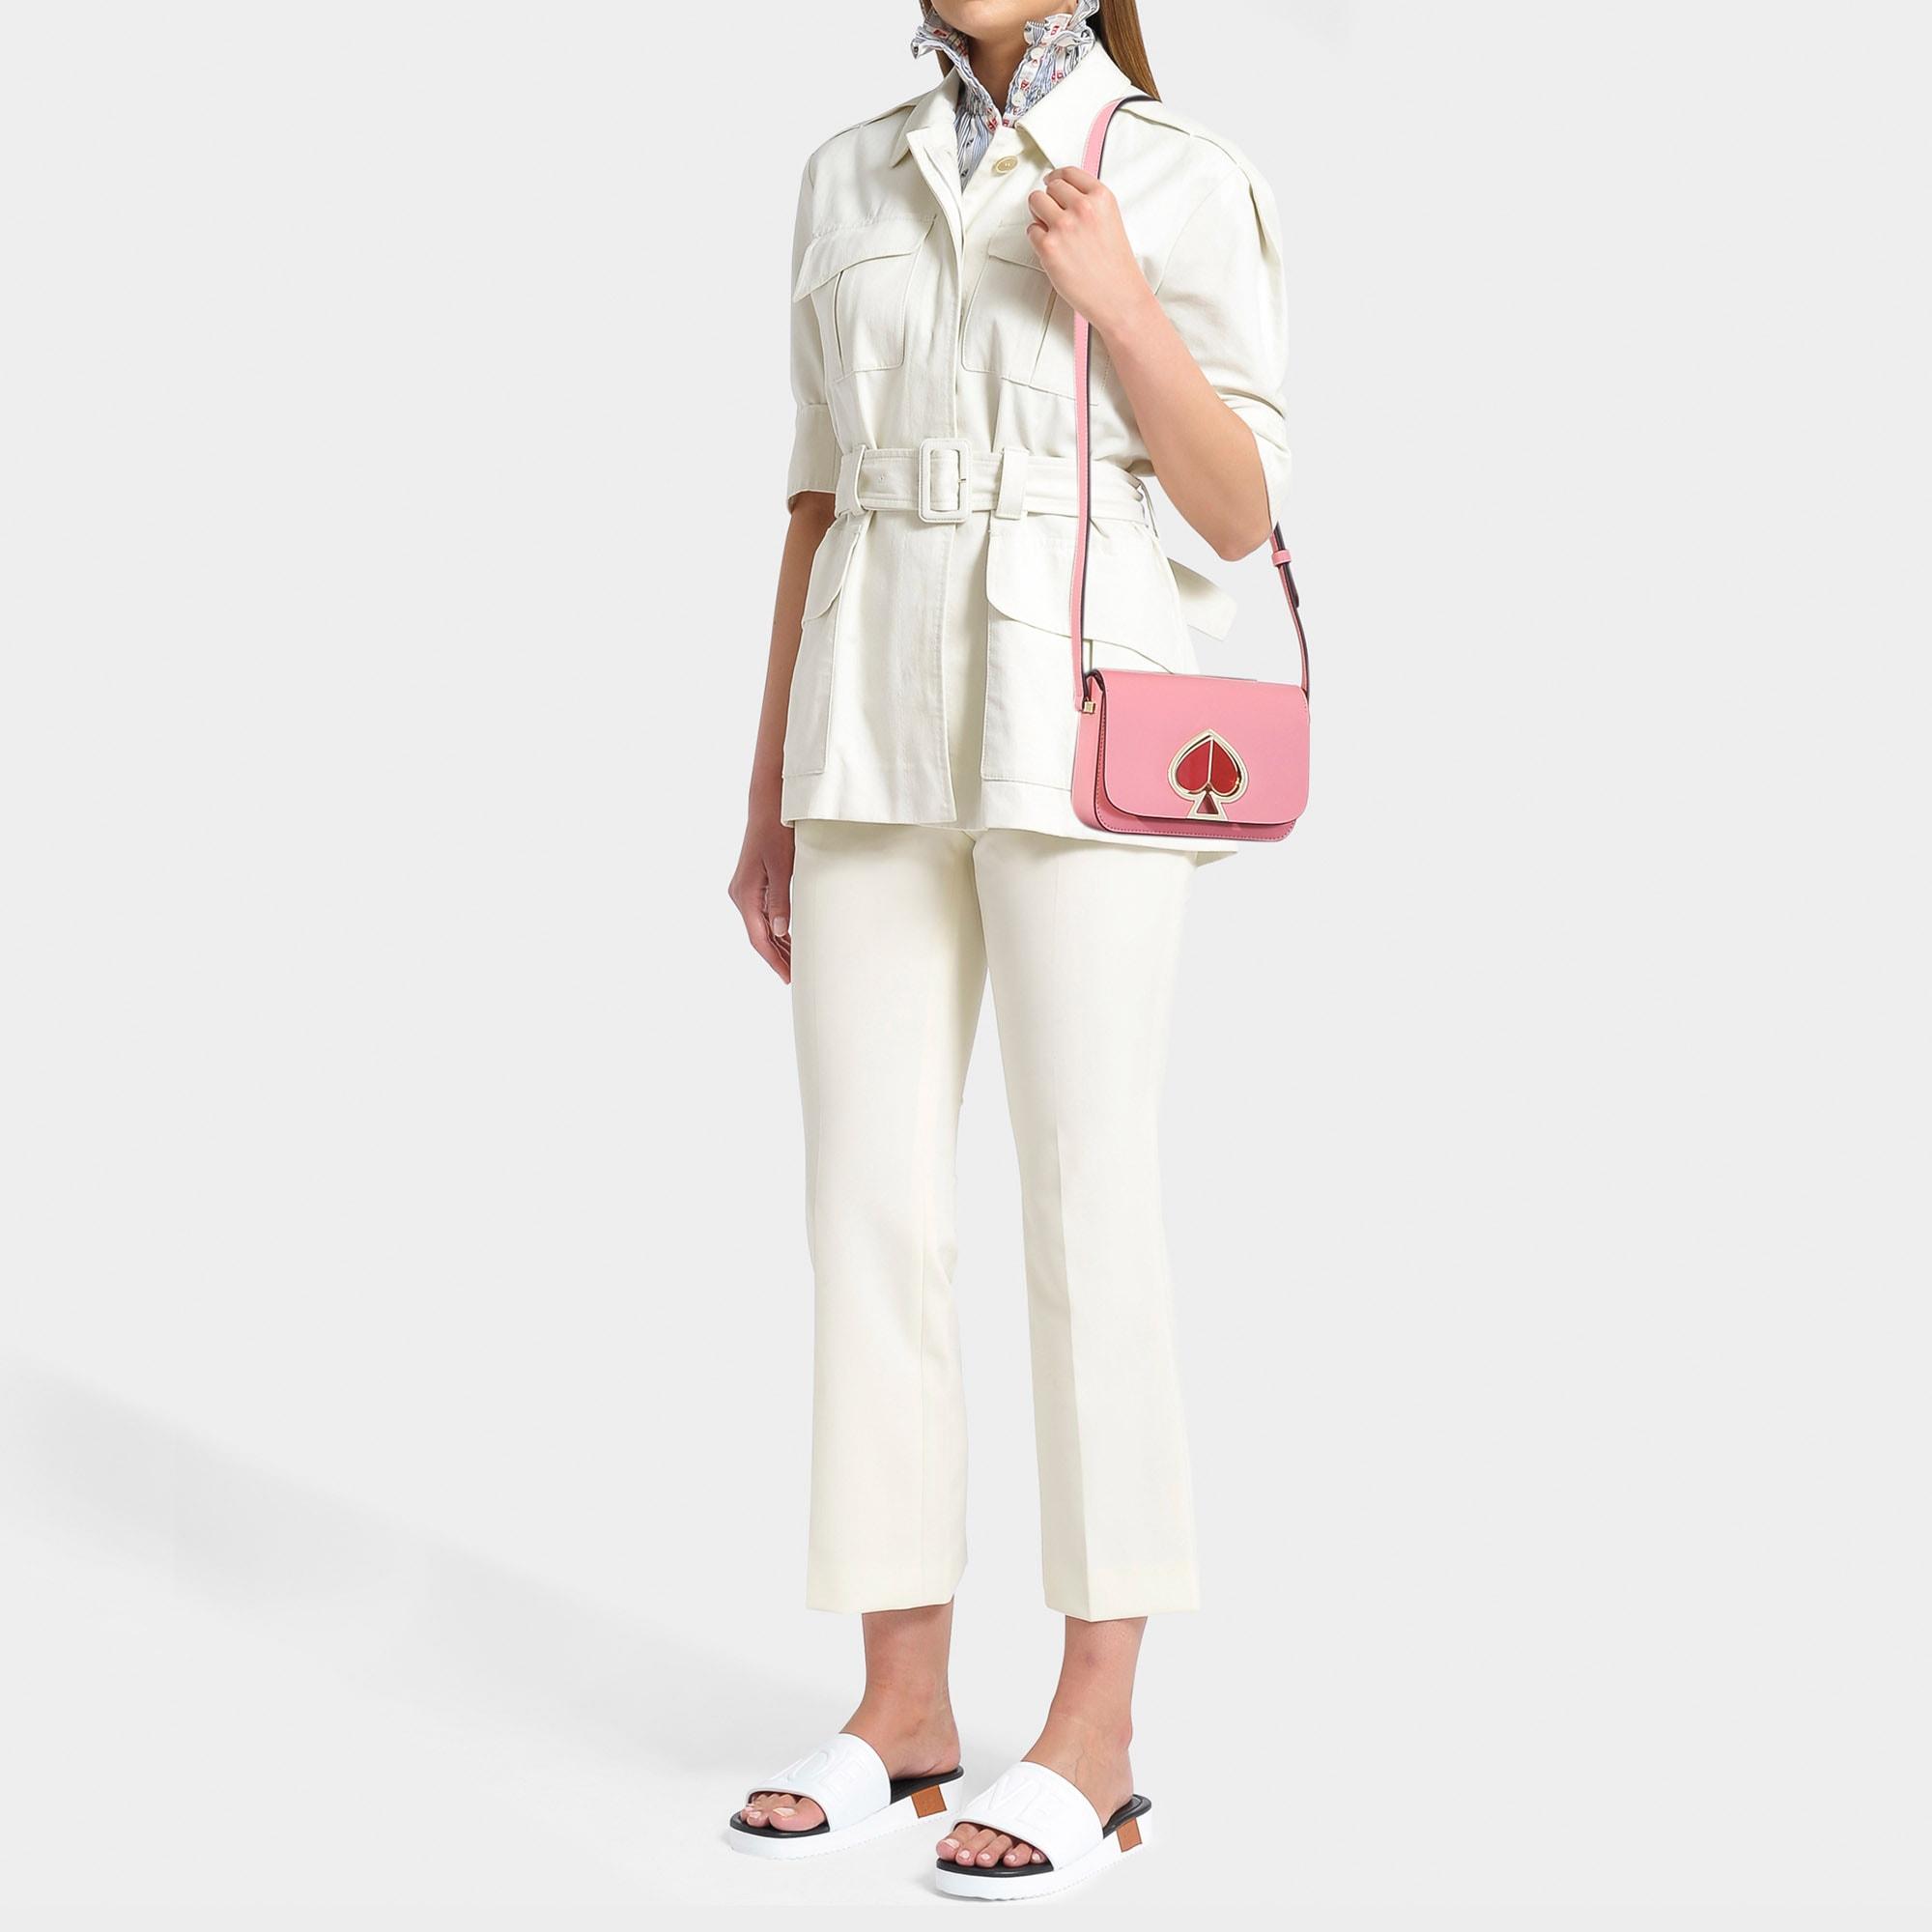 Kate Spade Nicola Twistlock Small Flap Shoulder Bag In Pink Leather in Pink - Lyst